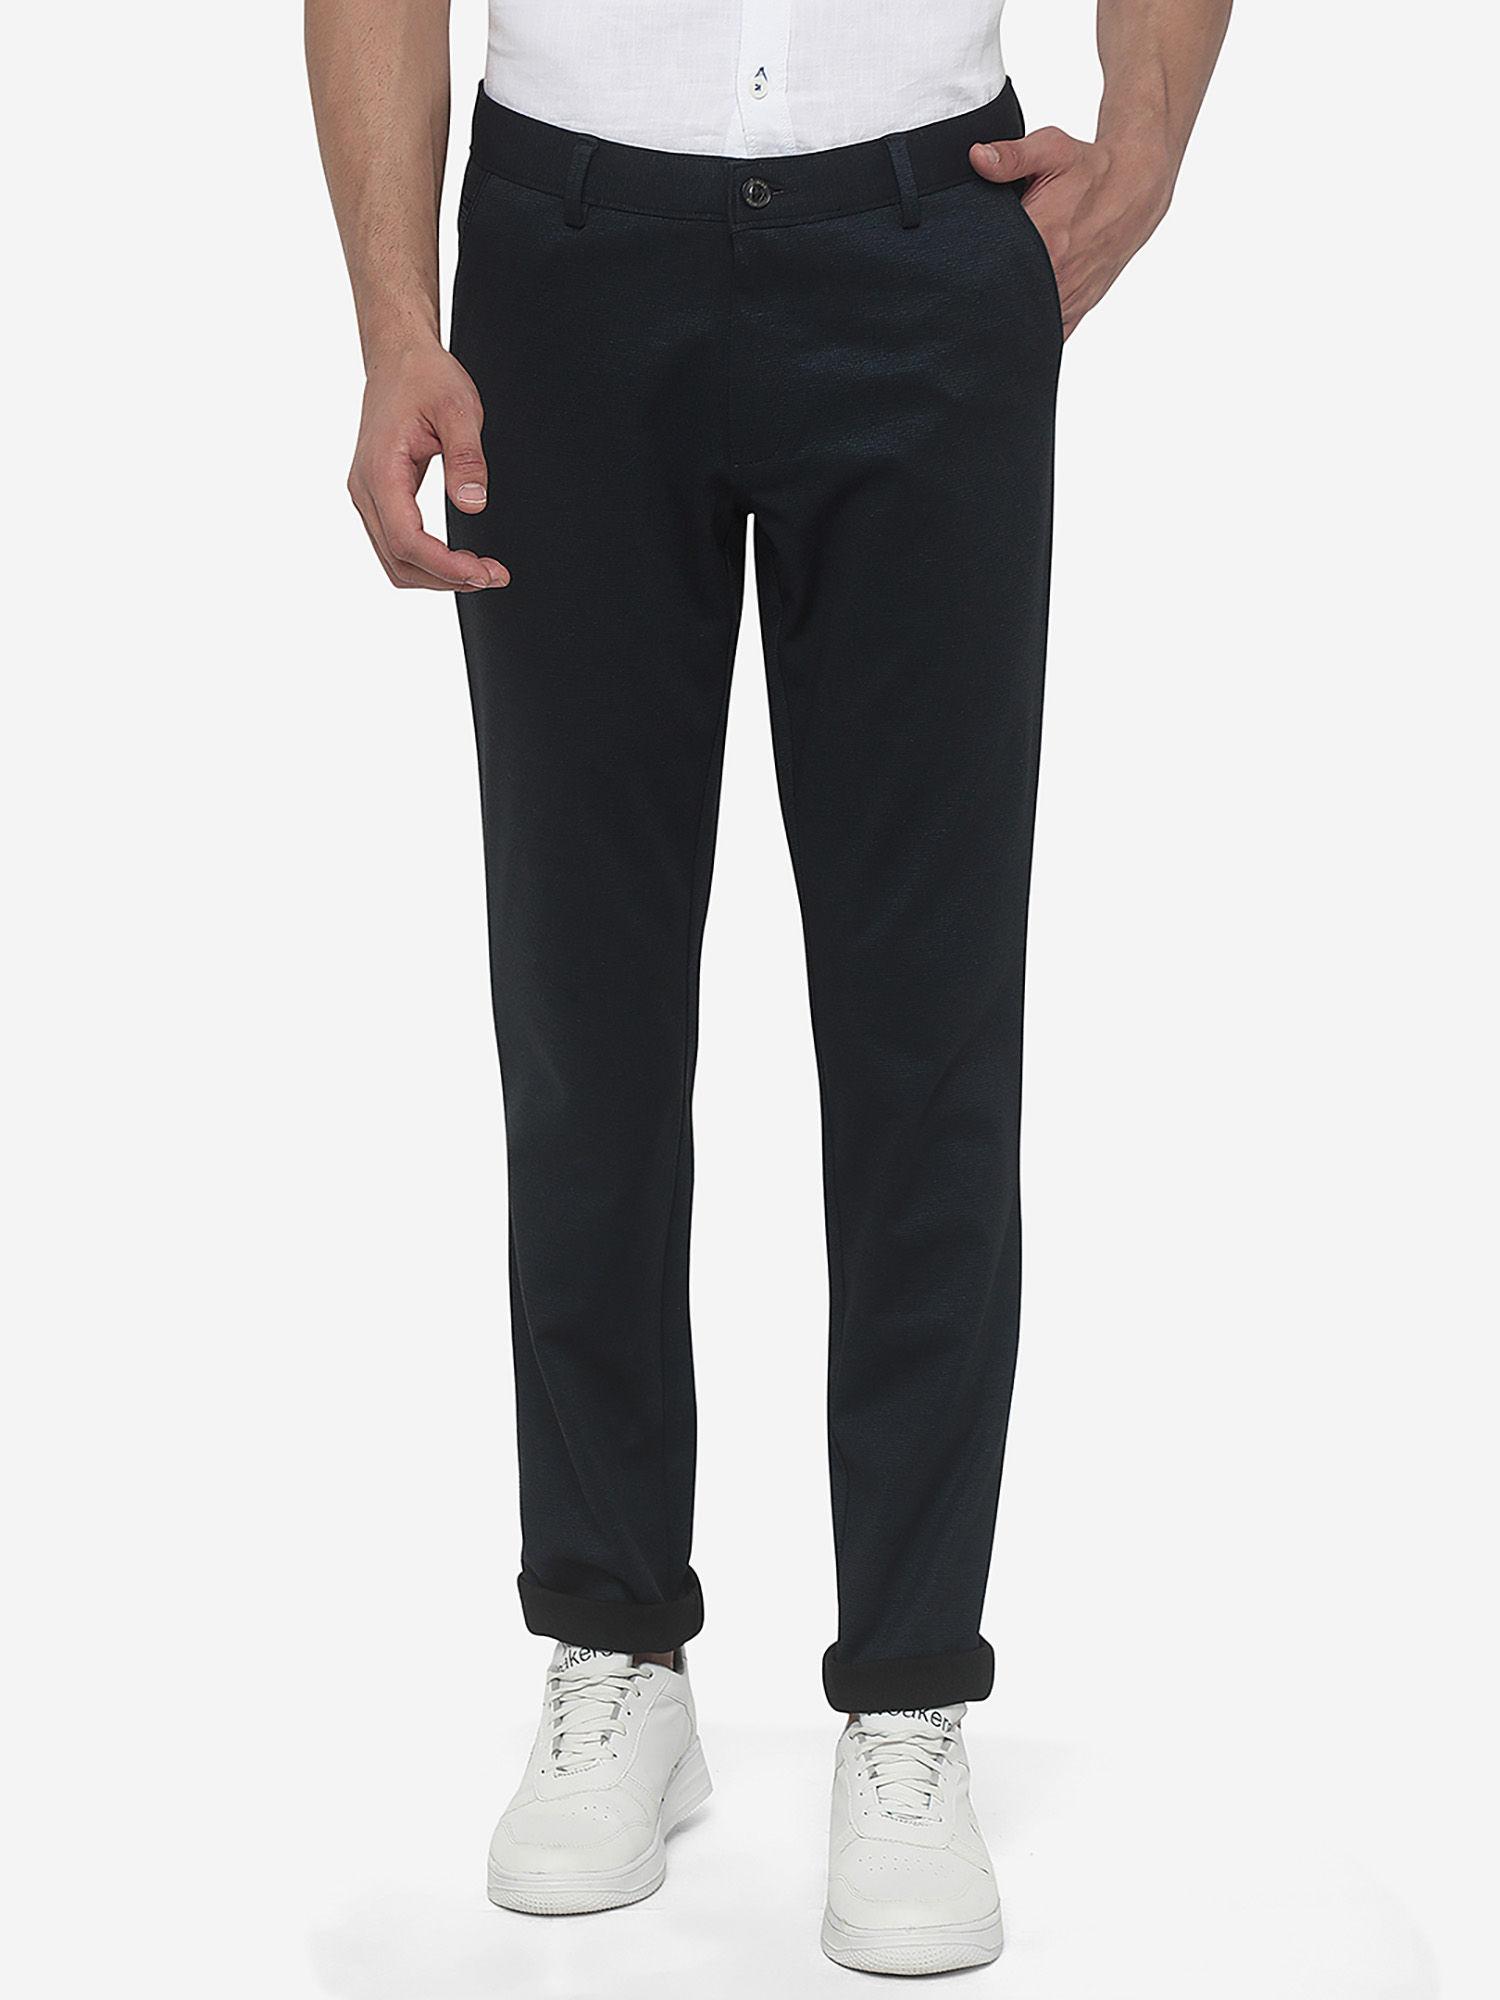 men's solid navy blue cotton blend slim fit formal trouser